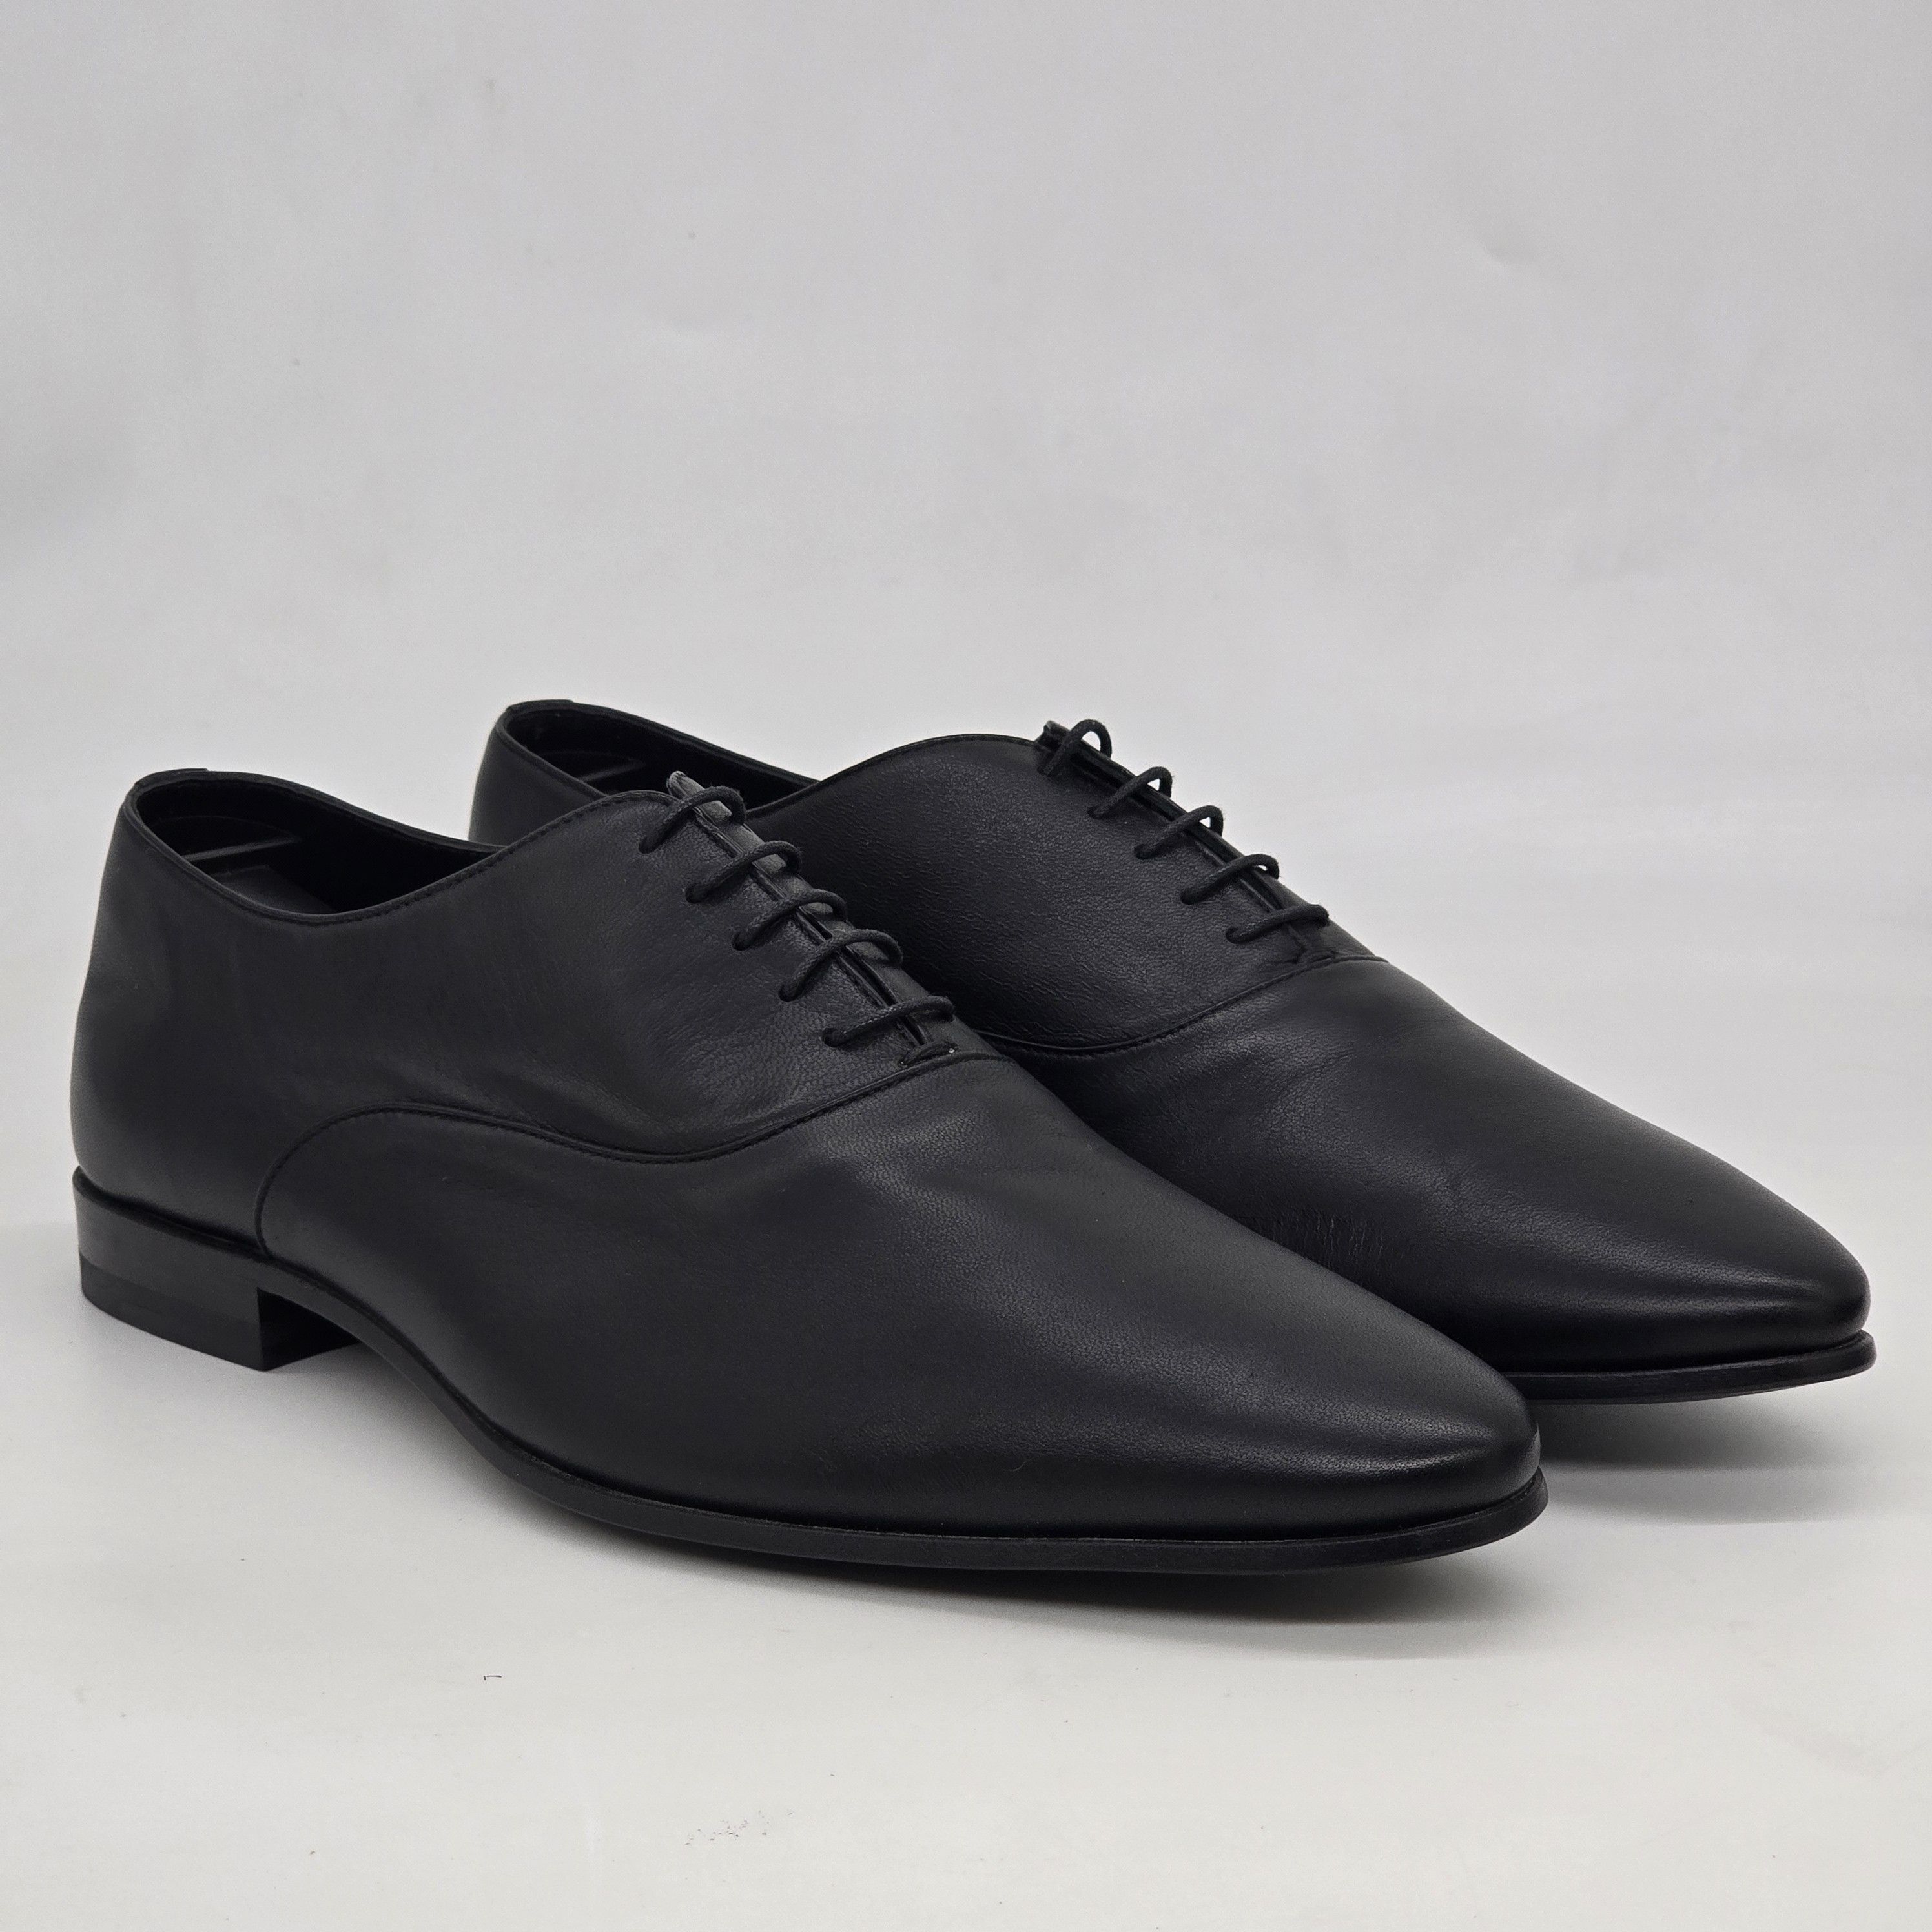 Saint Laurent Paris - Leather Plain Toe Oxford Shoes - 1